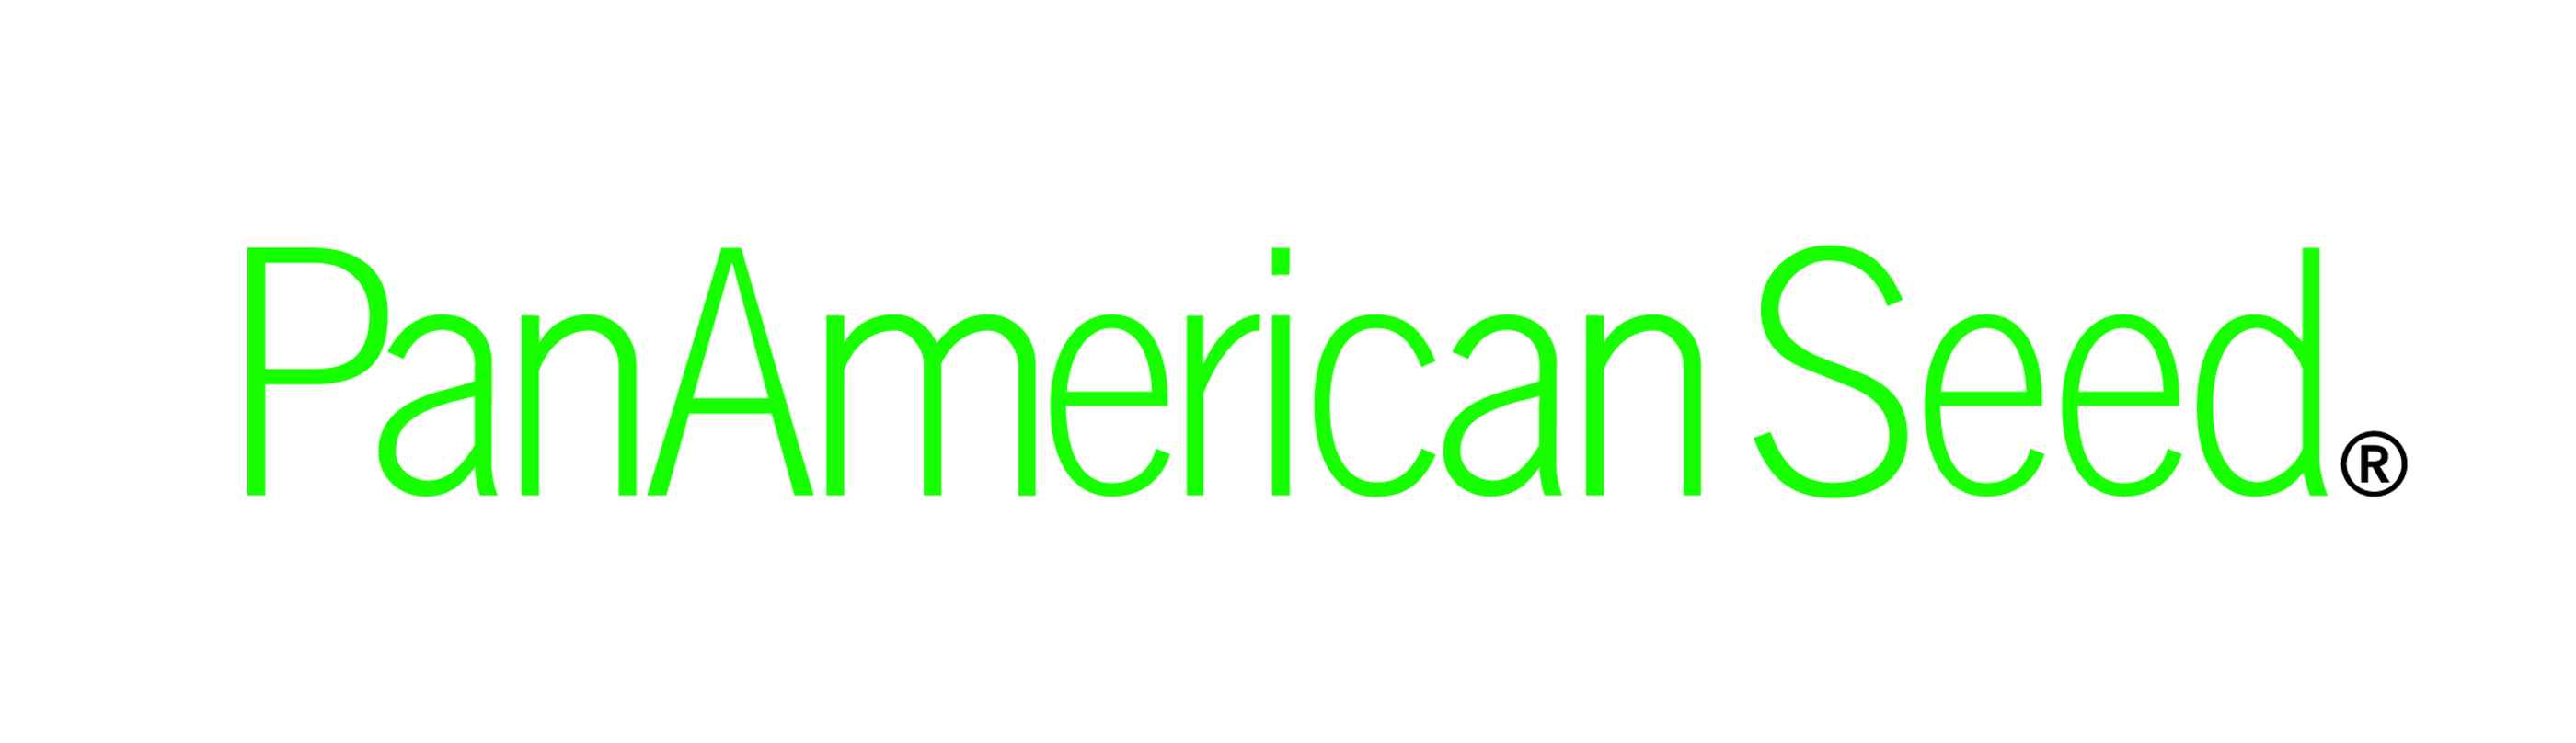 PanAmericanSeed logo.jpg